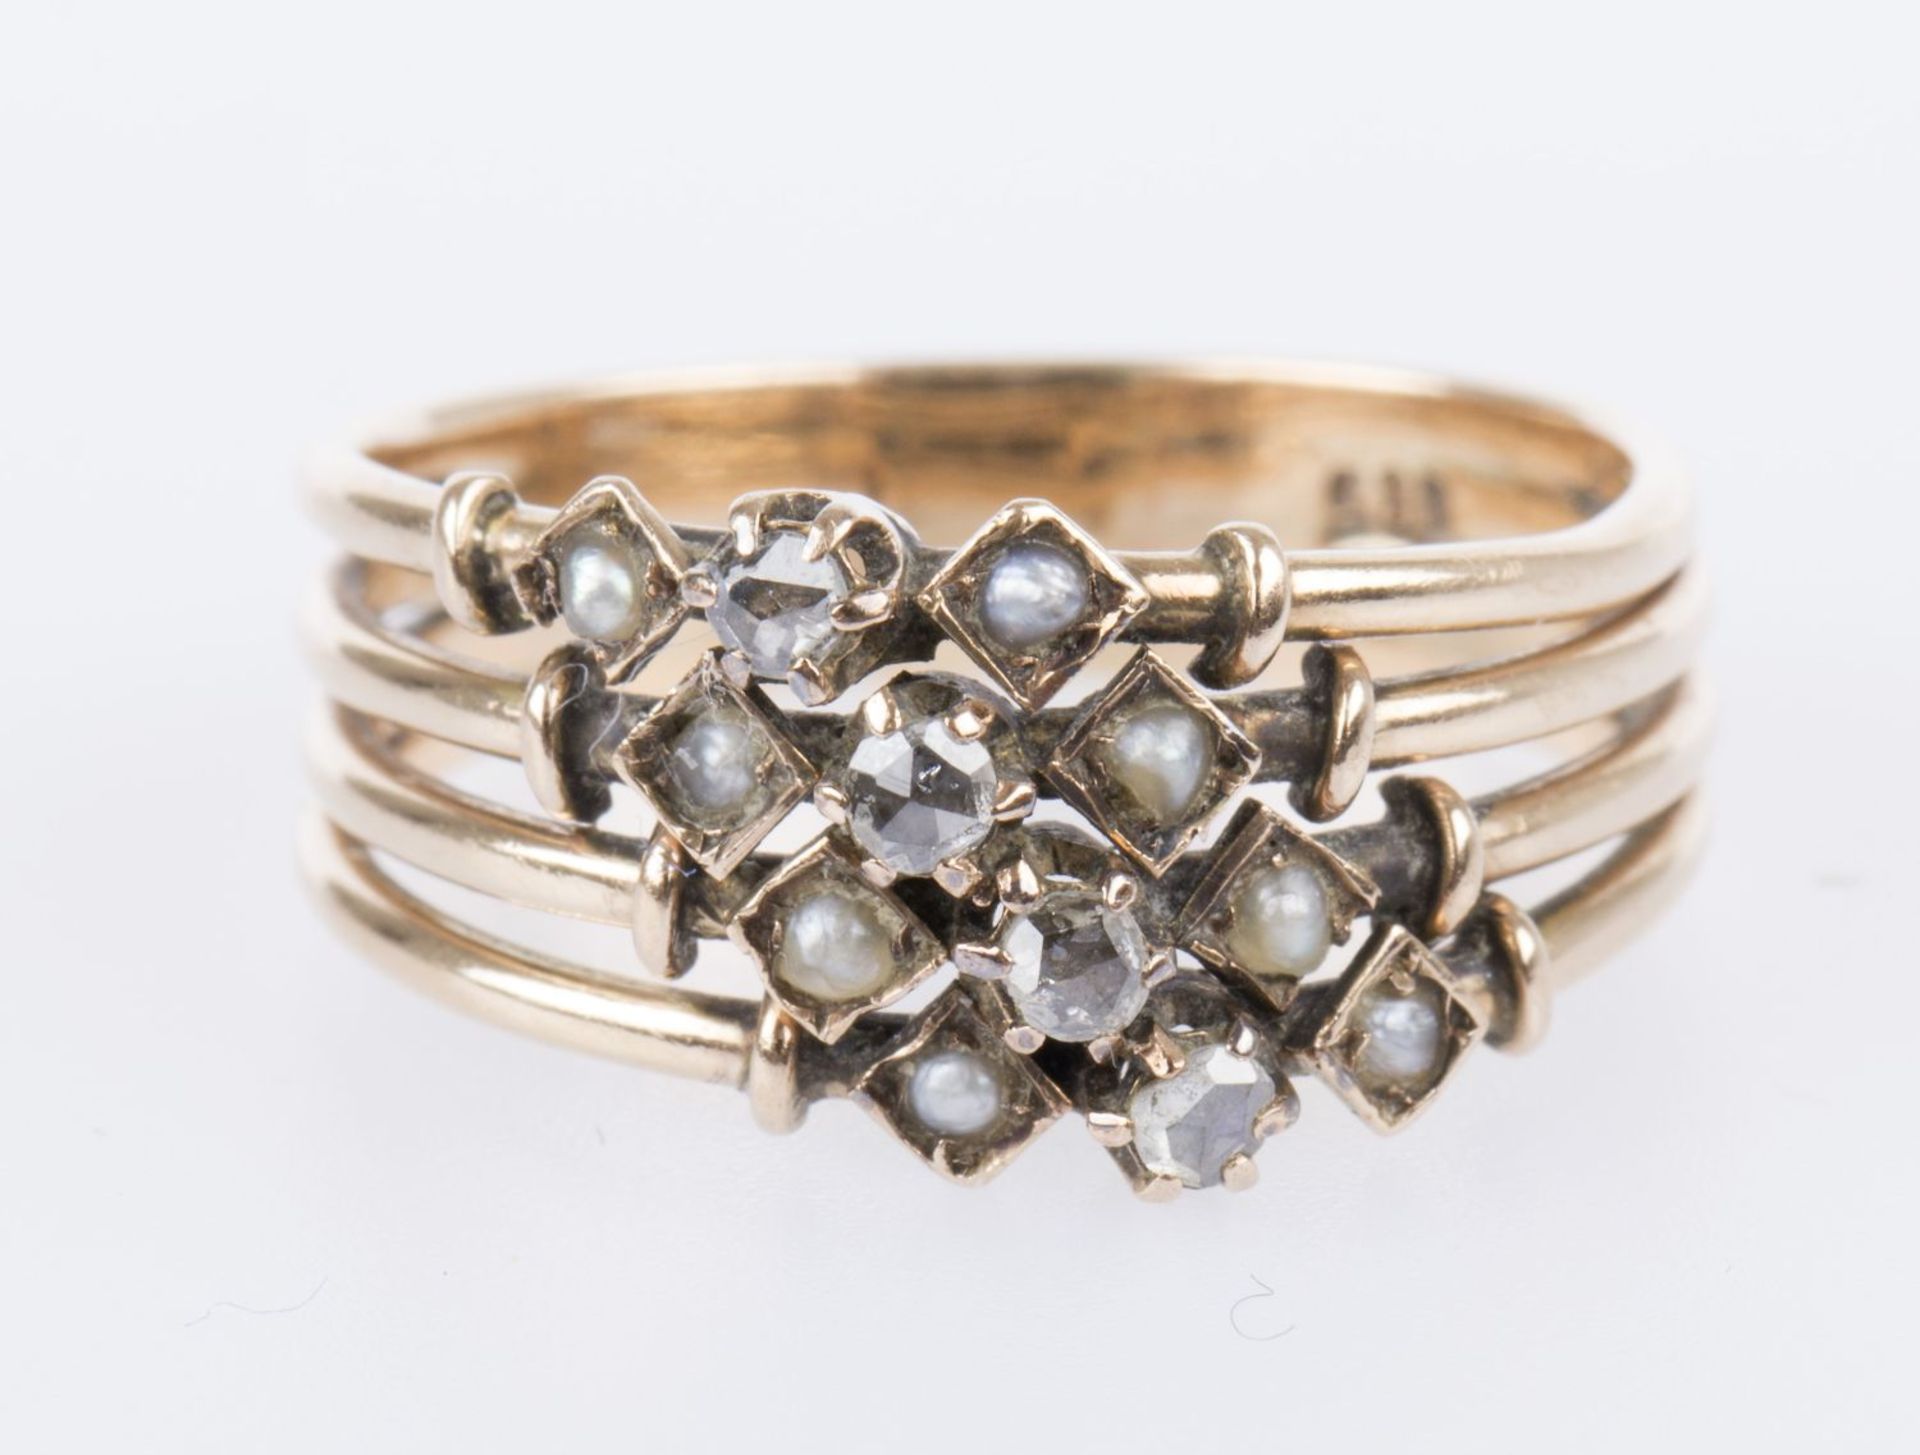 Diamant-Perlring Gelbgold 585. Ausgefasst mit kleinen Perlen und Dia.-Rosen. RG 56. Ca. 4,3 g. - Bild 2 aus 3